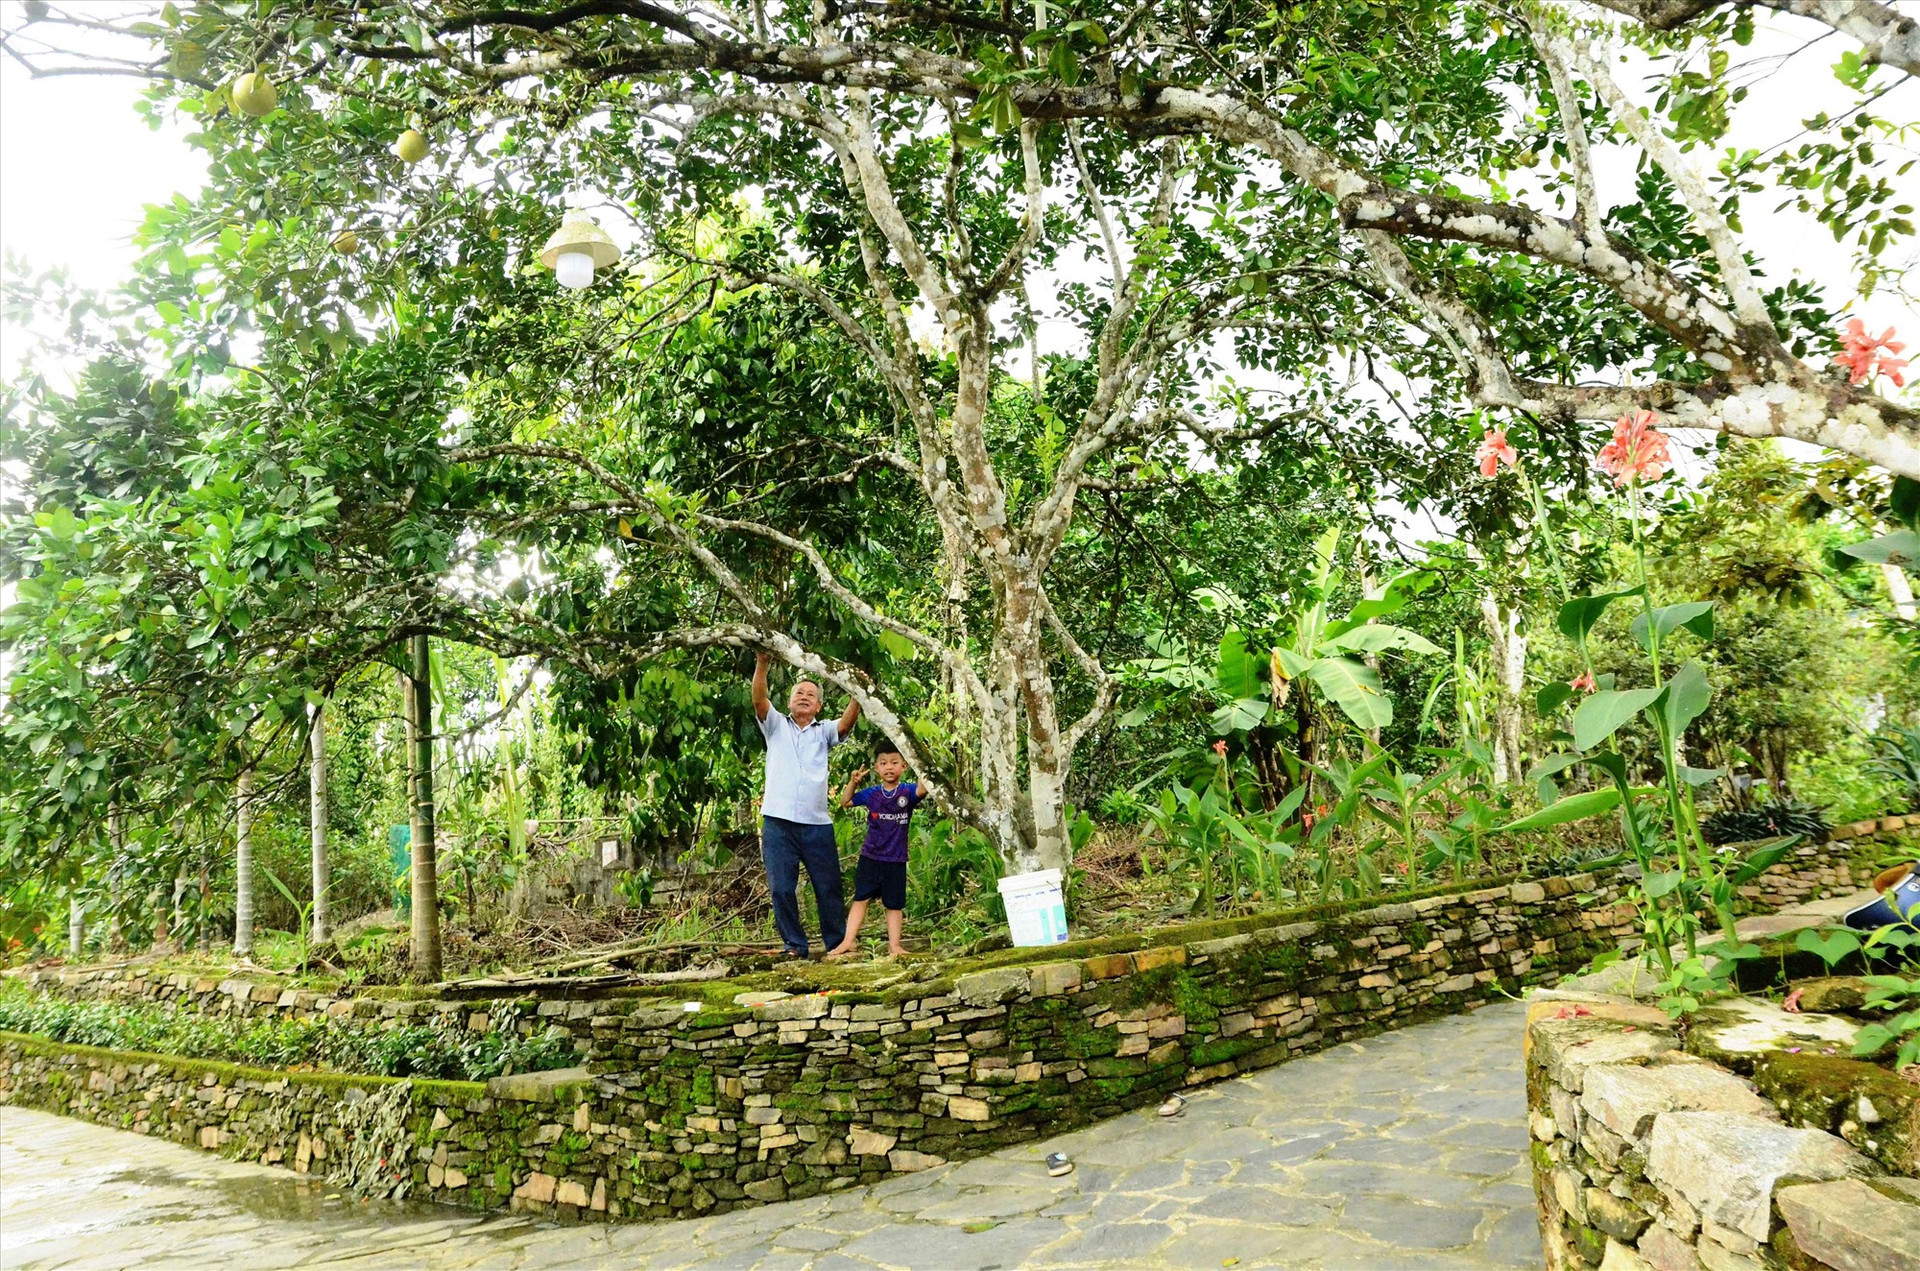 Cùng với trồng cây ăn quả, người dân Lộc Yên cũng đầu tư chỉnh trang vườn nhà xanh - sạch - đẹp, hiệu quả. Ảnh:N.HƯNG